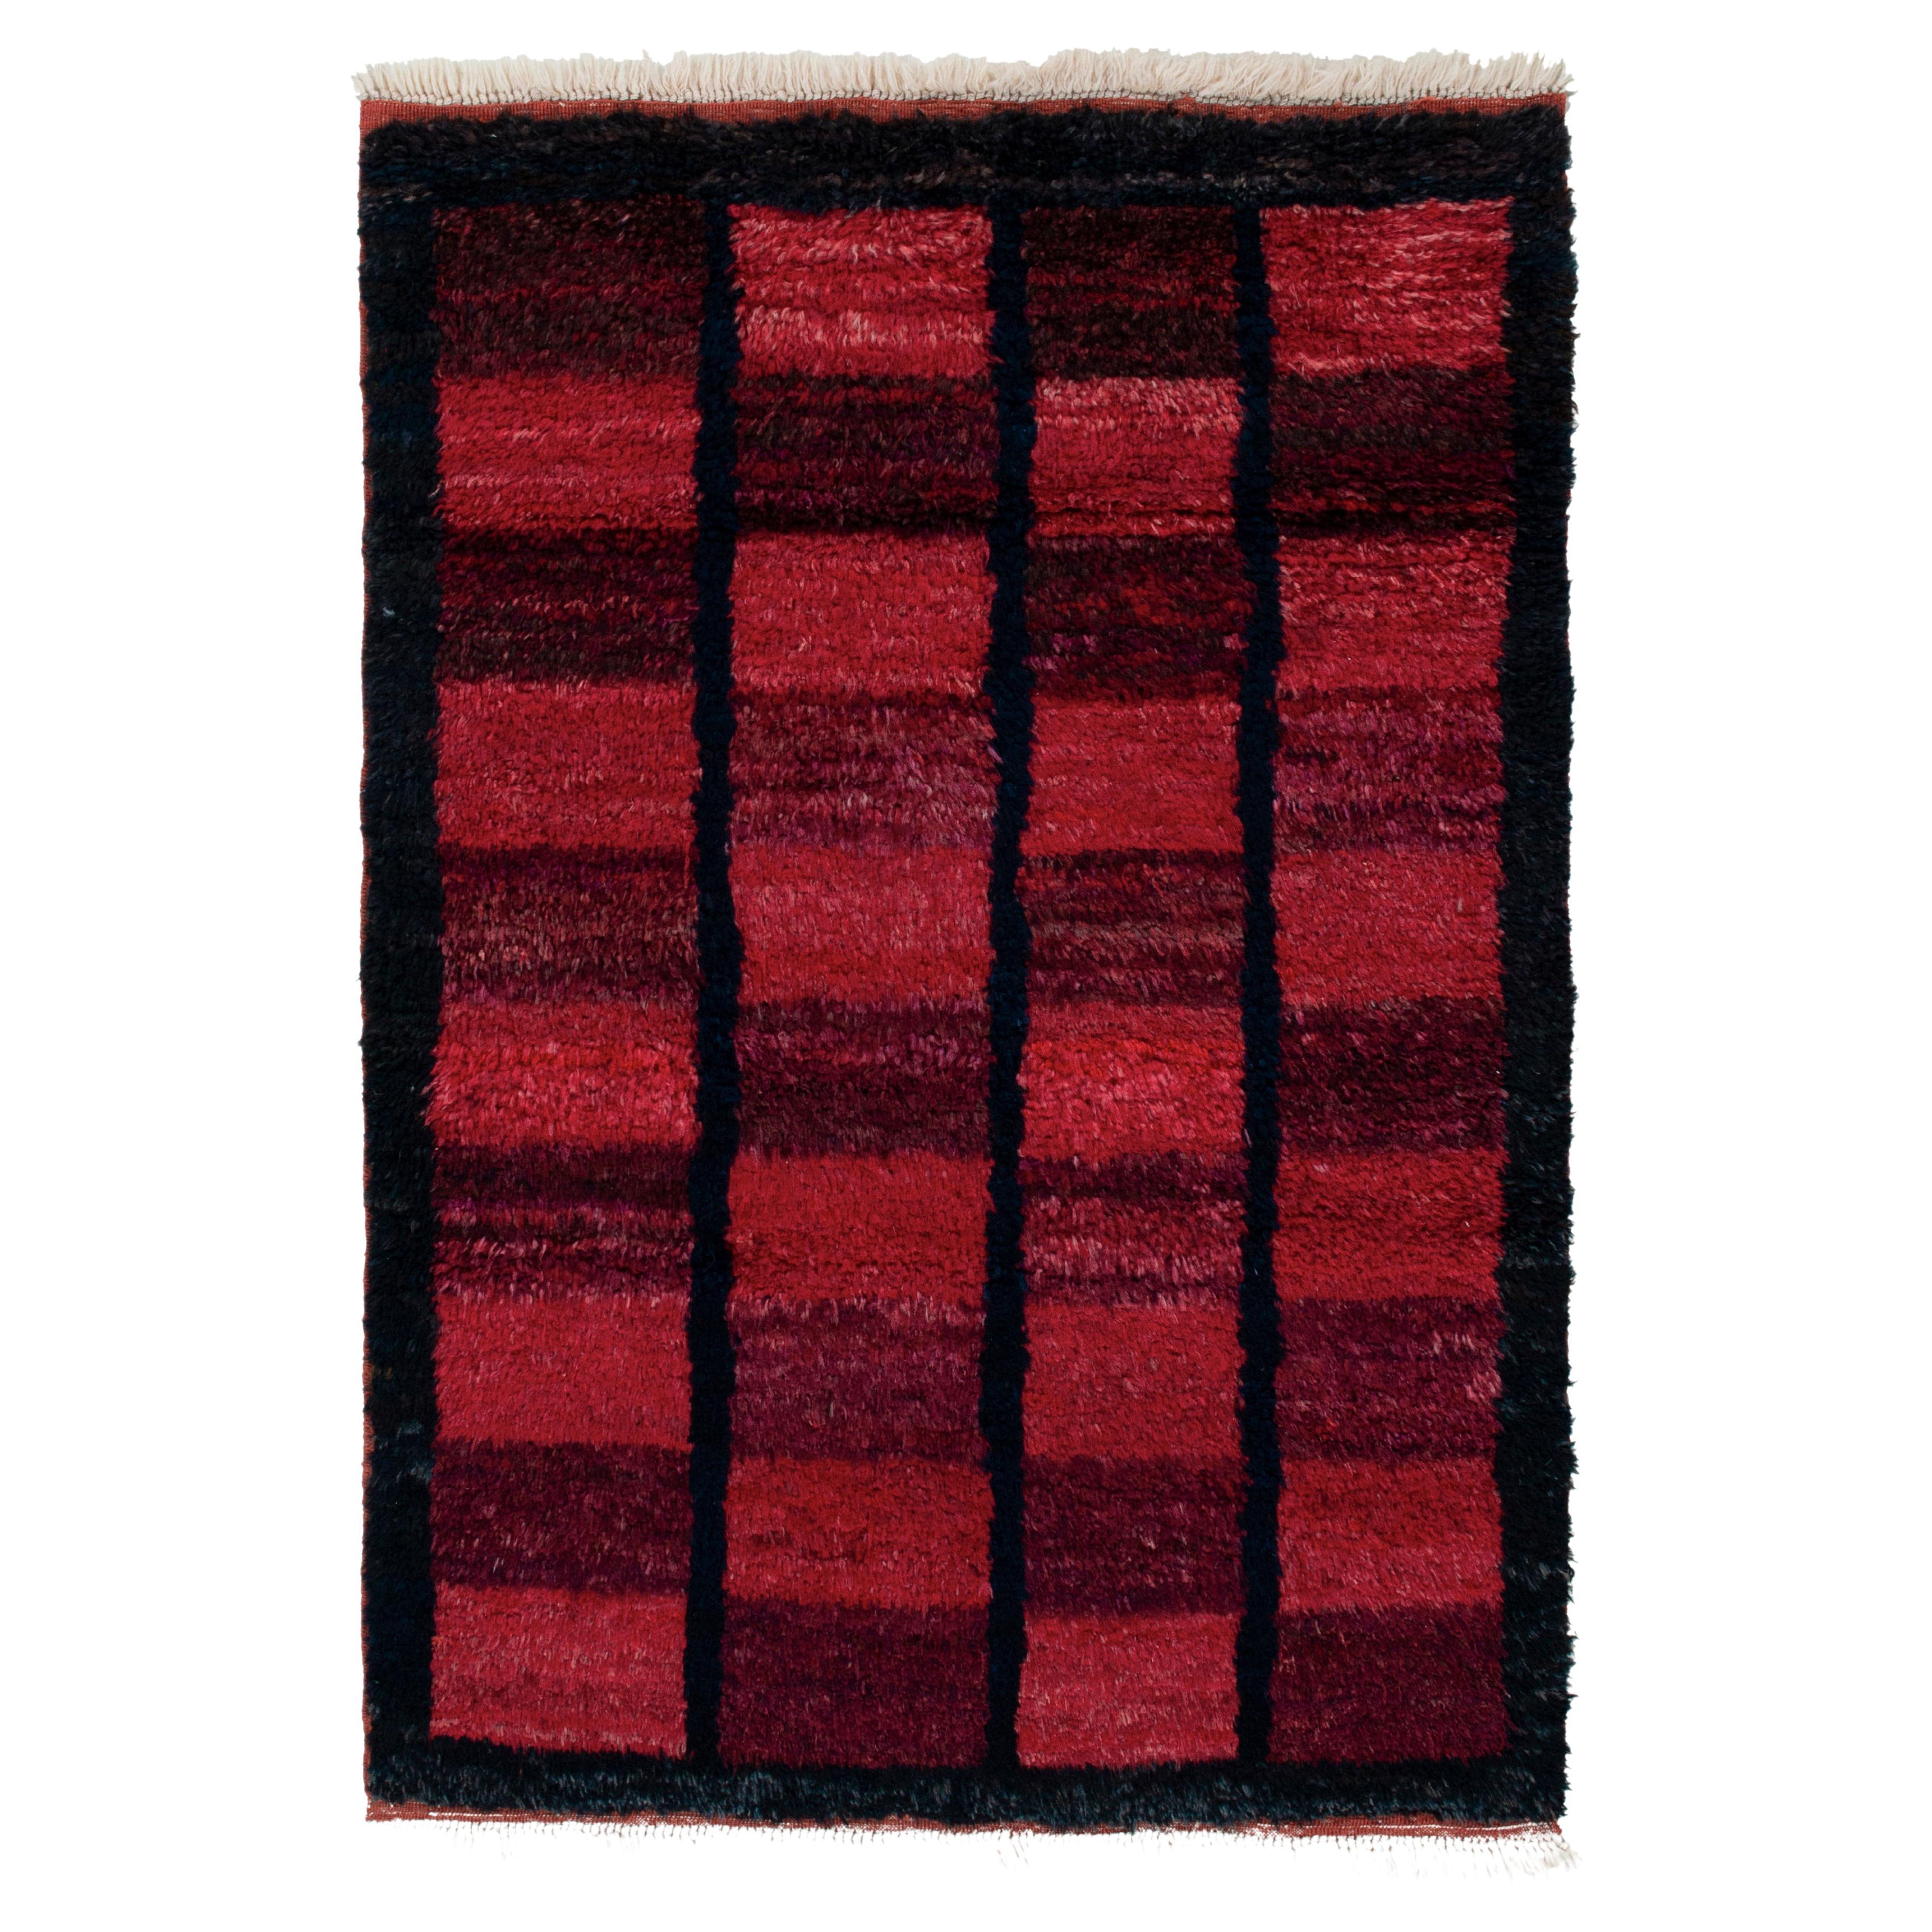 1950s Vintage Tulu Rug in Red, Blue-Black Geometric Pattern by Rug & Kilim